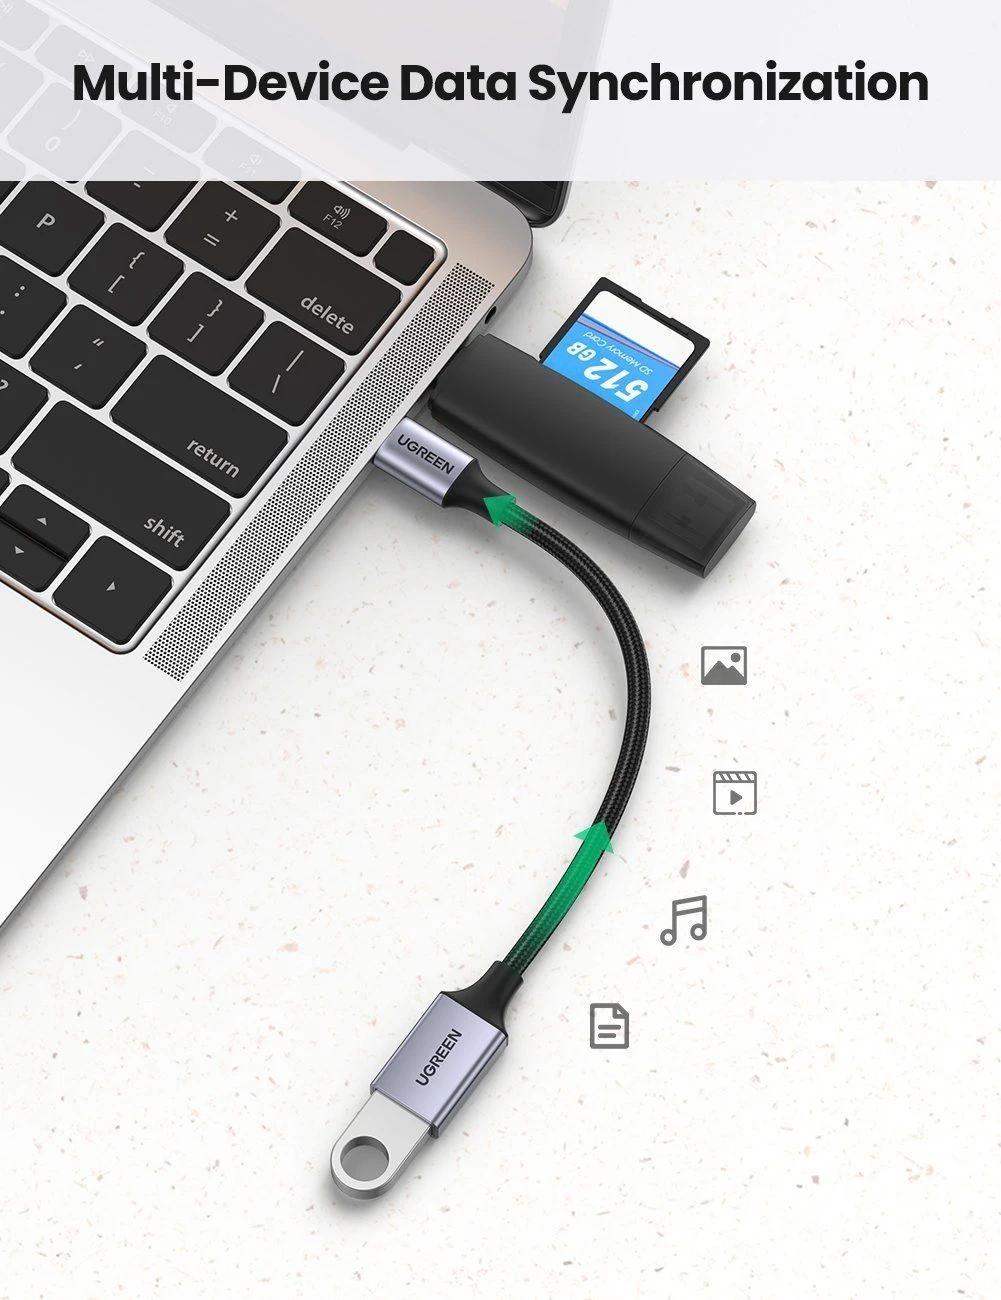 Ugreen UG70889US378TK 10cm bộ chuyển USB type C ra USB 3.0 OTG màu xám - HÀNG CHÍNH HÃNG